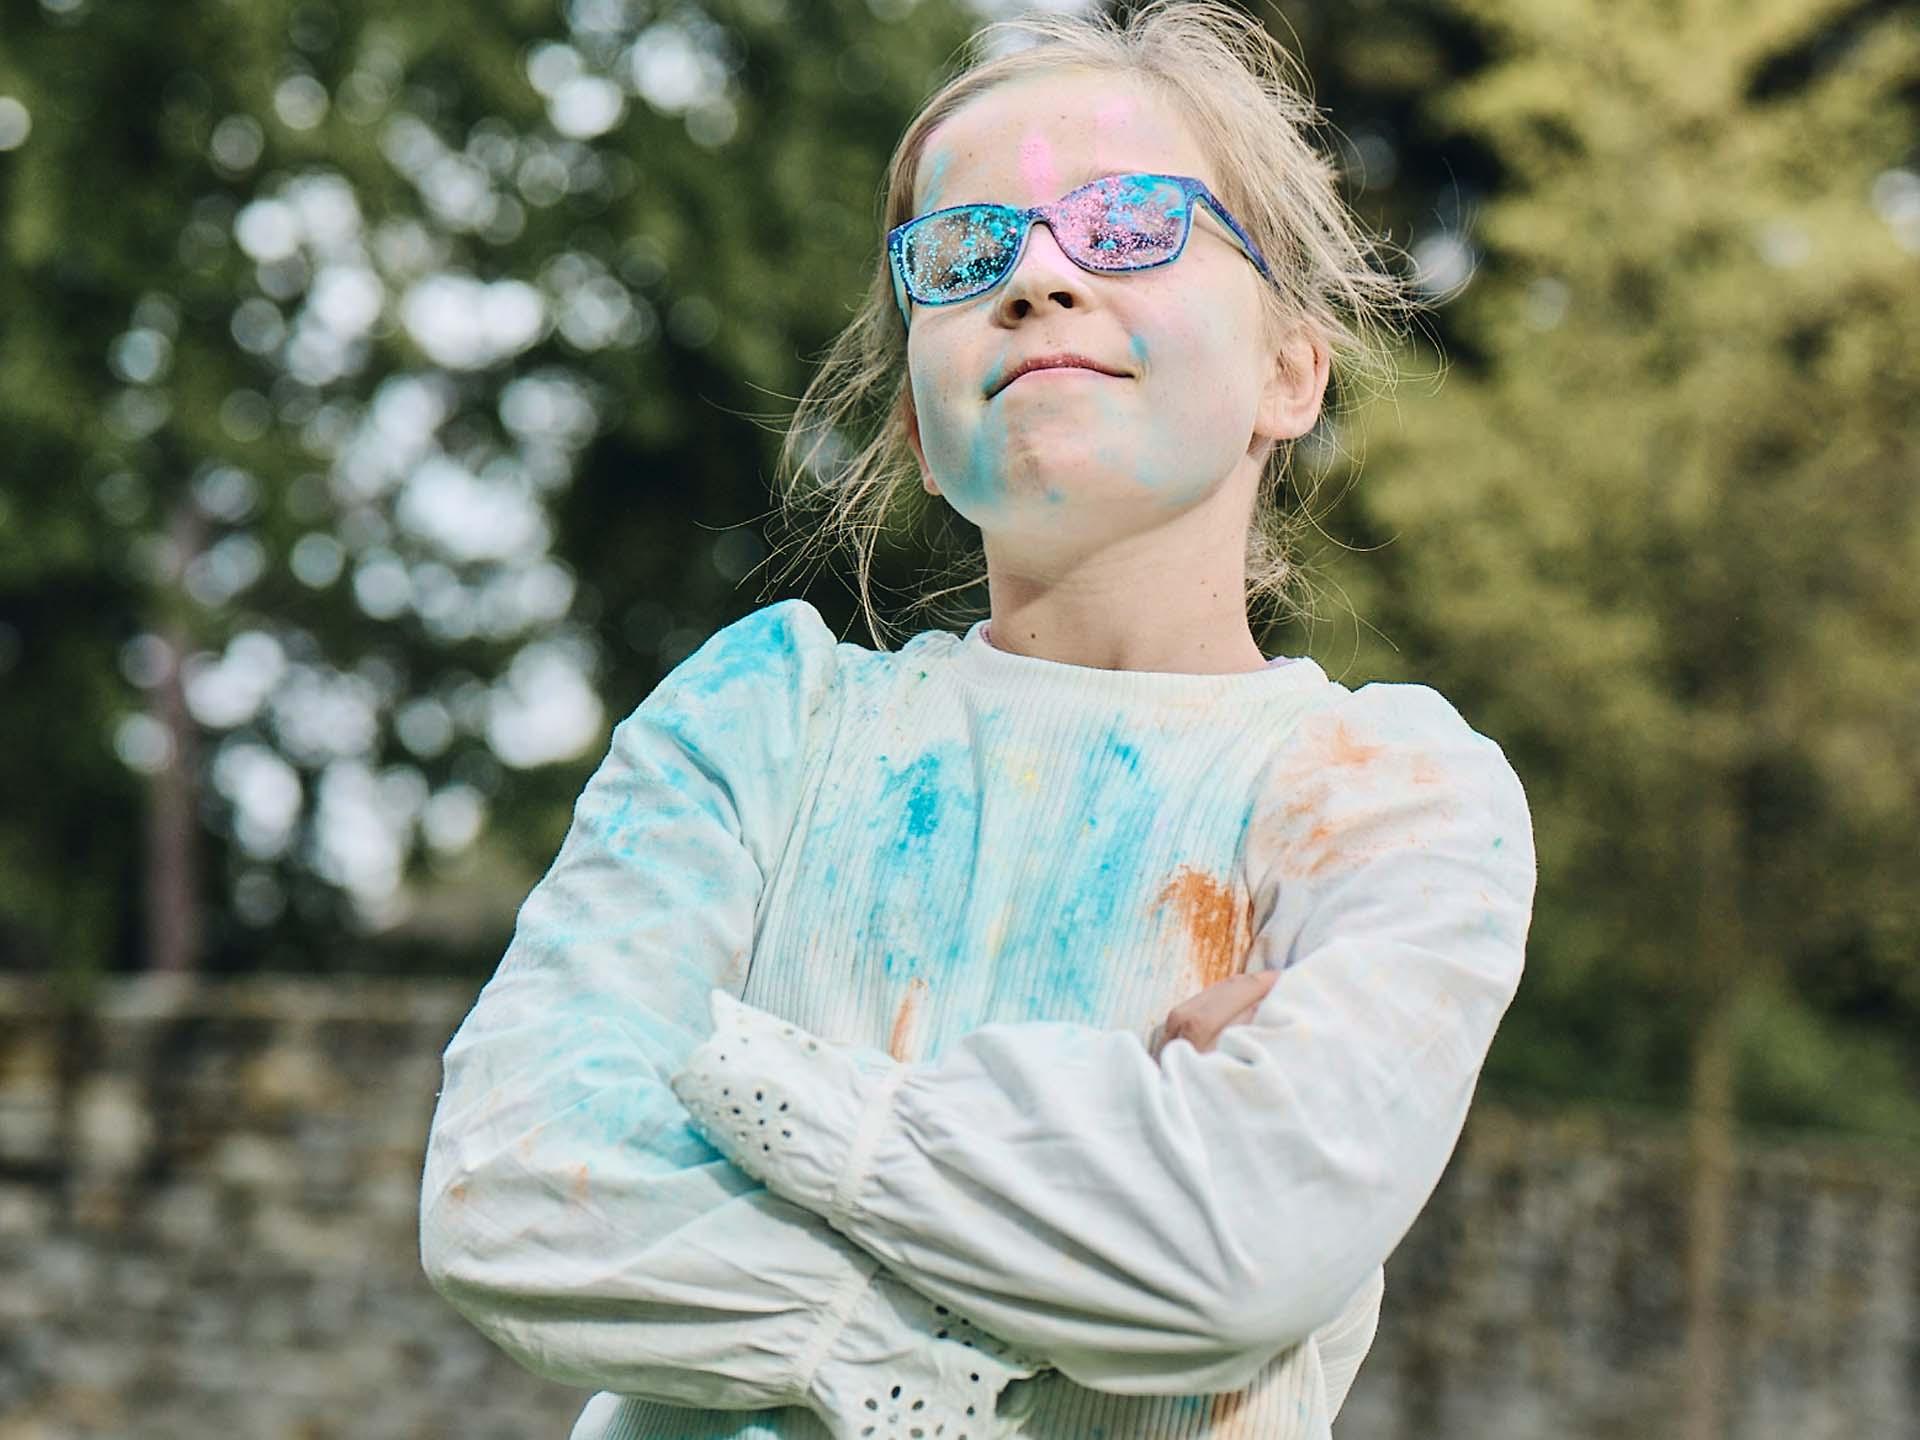 Una niña de brazos cruzados y con las gafas sucias de jugar con polvos de colores mira con descaro y sonríe.